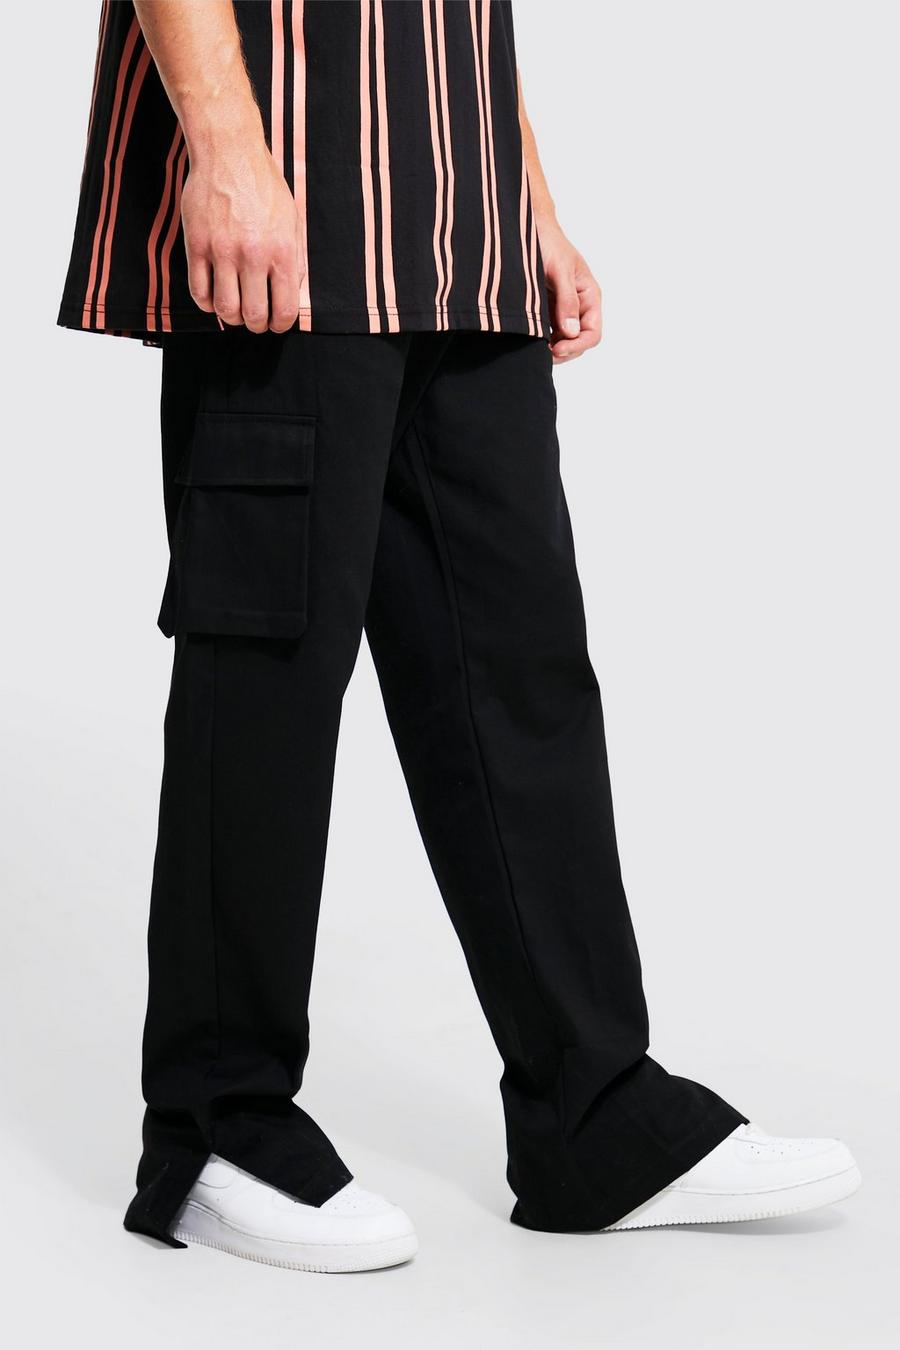 Pantaloni Chino Tall rilassati stile Cargo con spacco sul fondo, Black image number 1